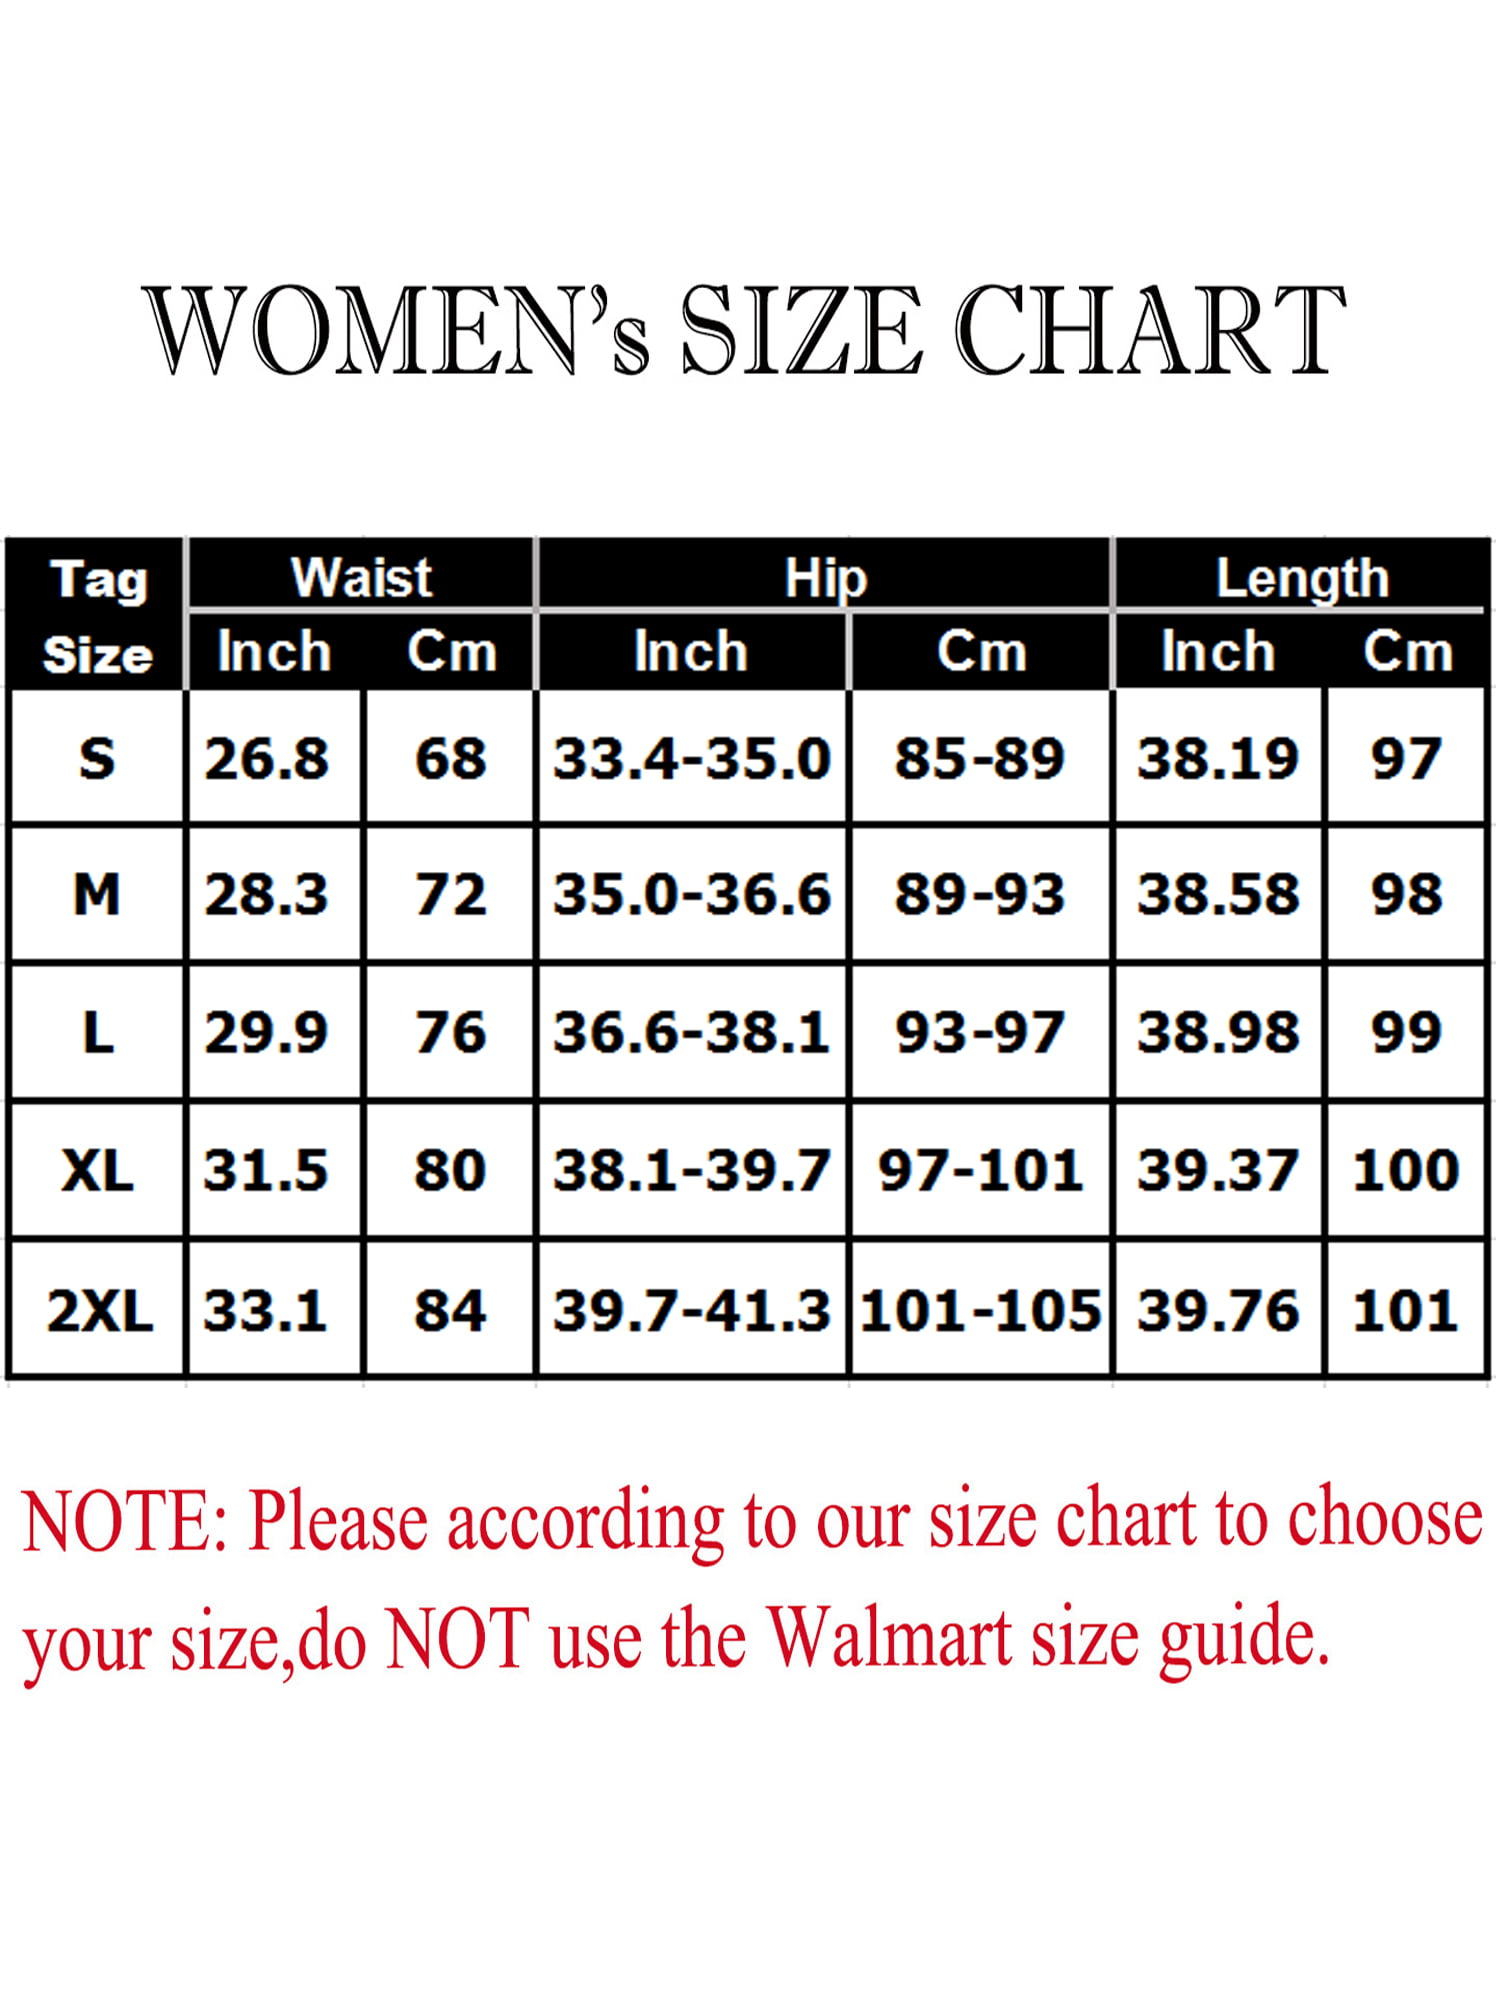 Walmart Womens Size Chart